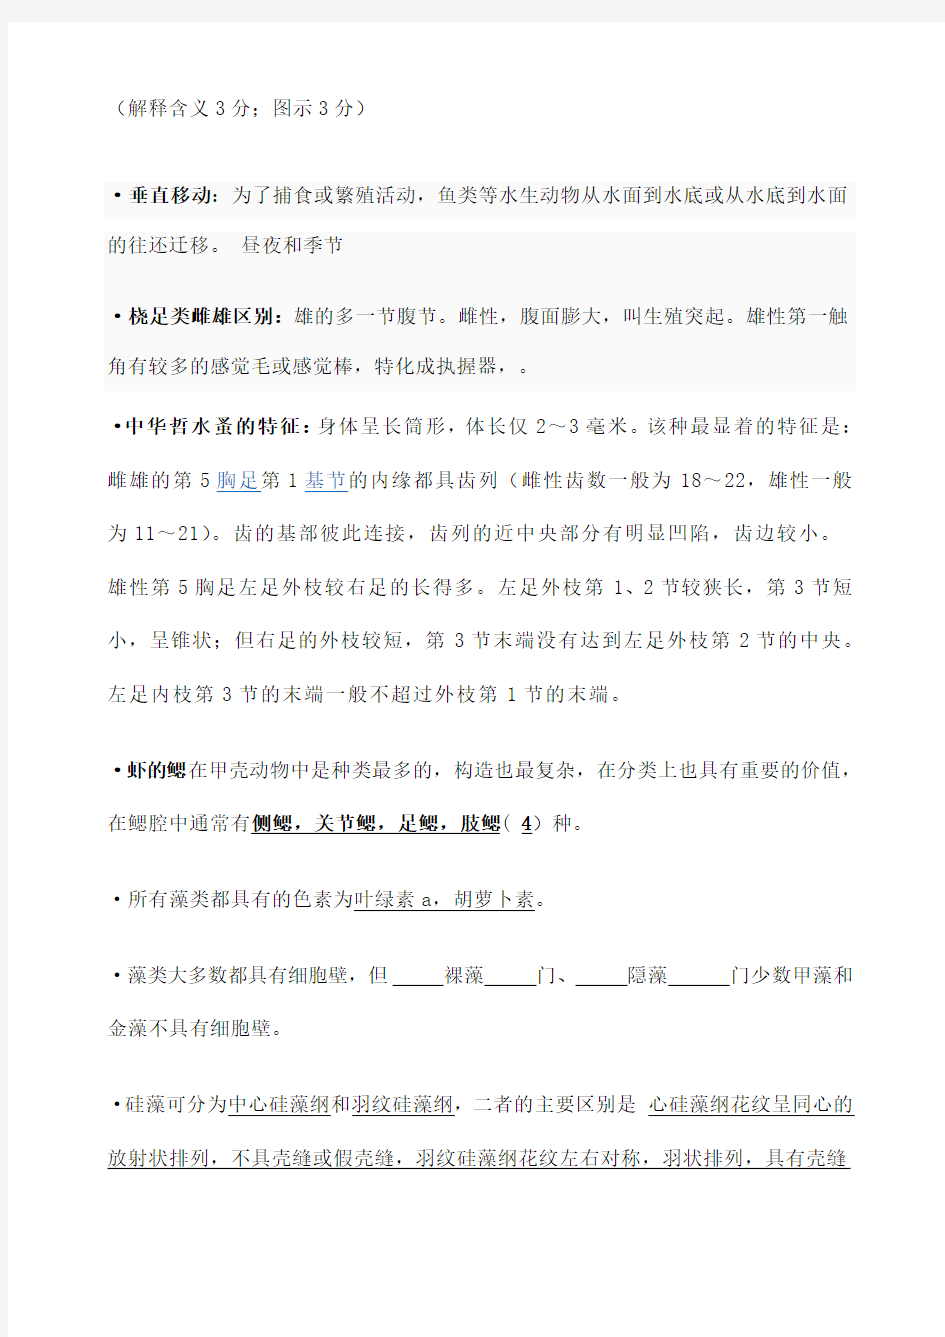 上海海洋大学水生生物学试题库完整版 含整理答案 